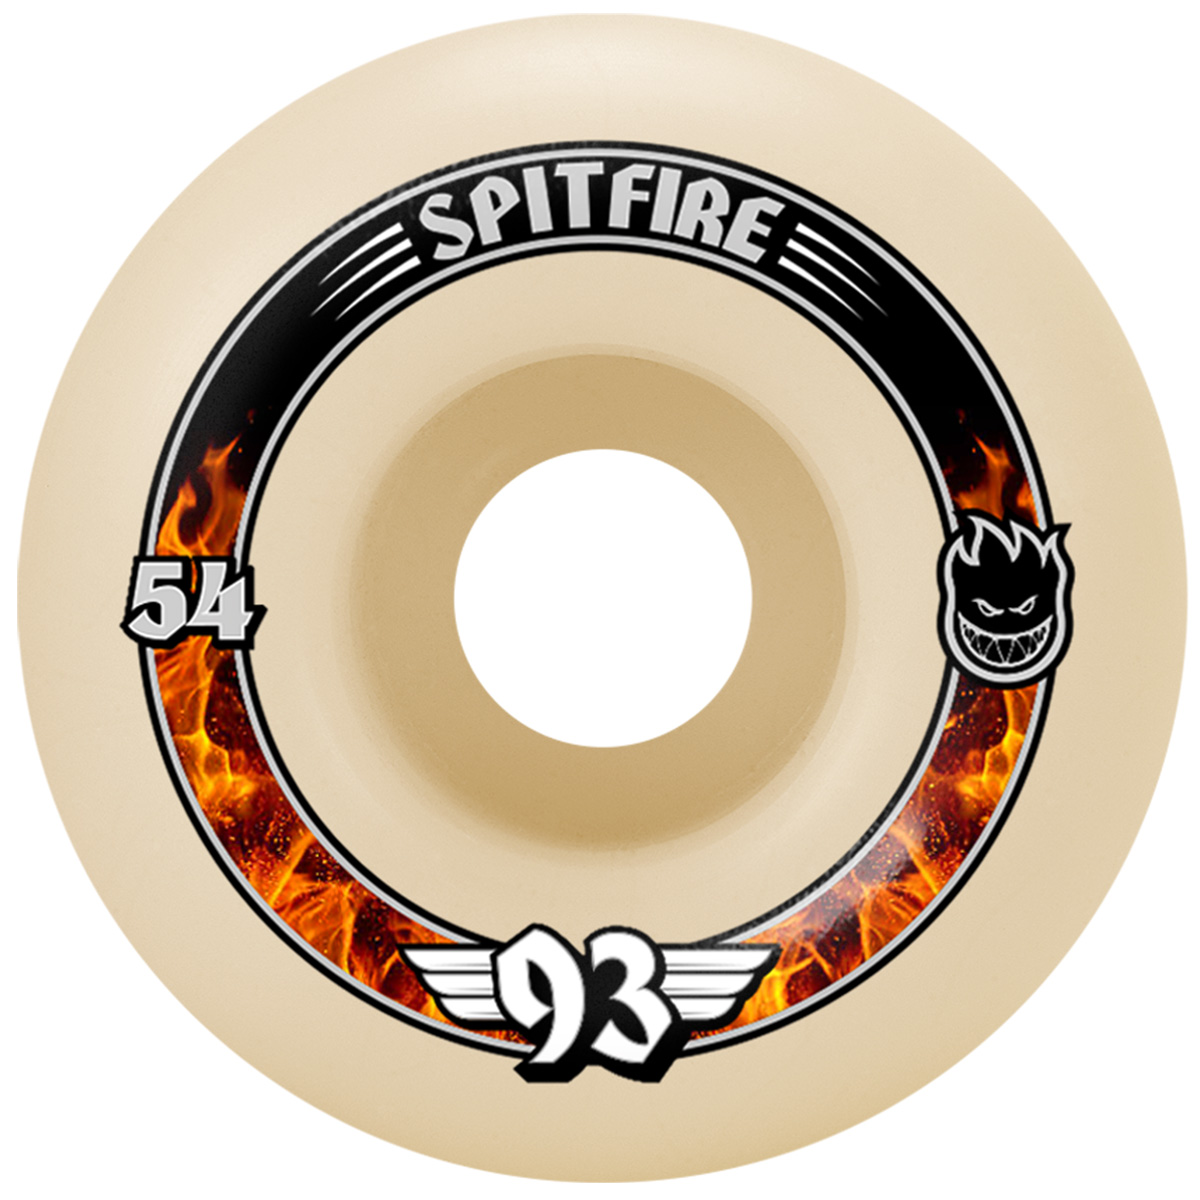 Spitfire Soft Sliders Formula Four Radial Wheels 93D 54mm